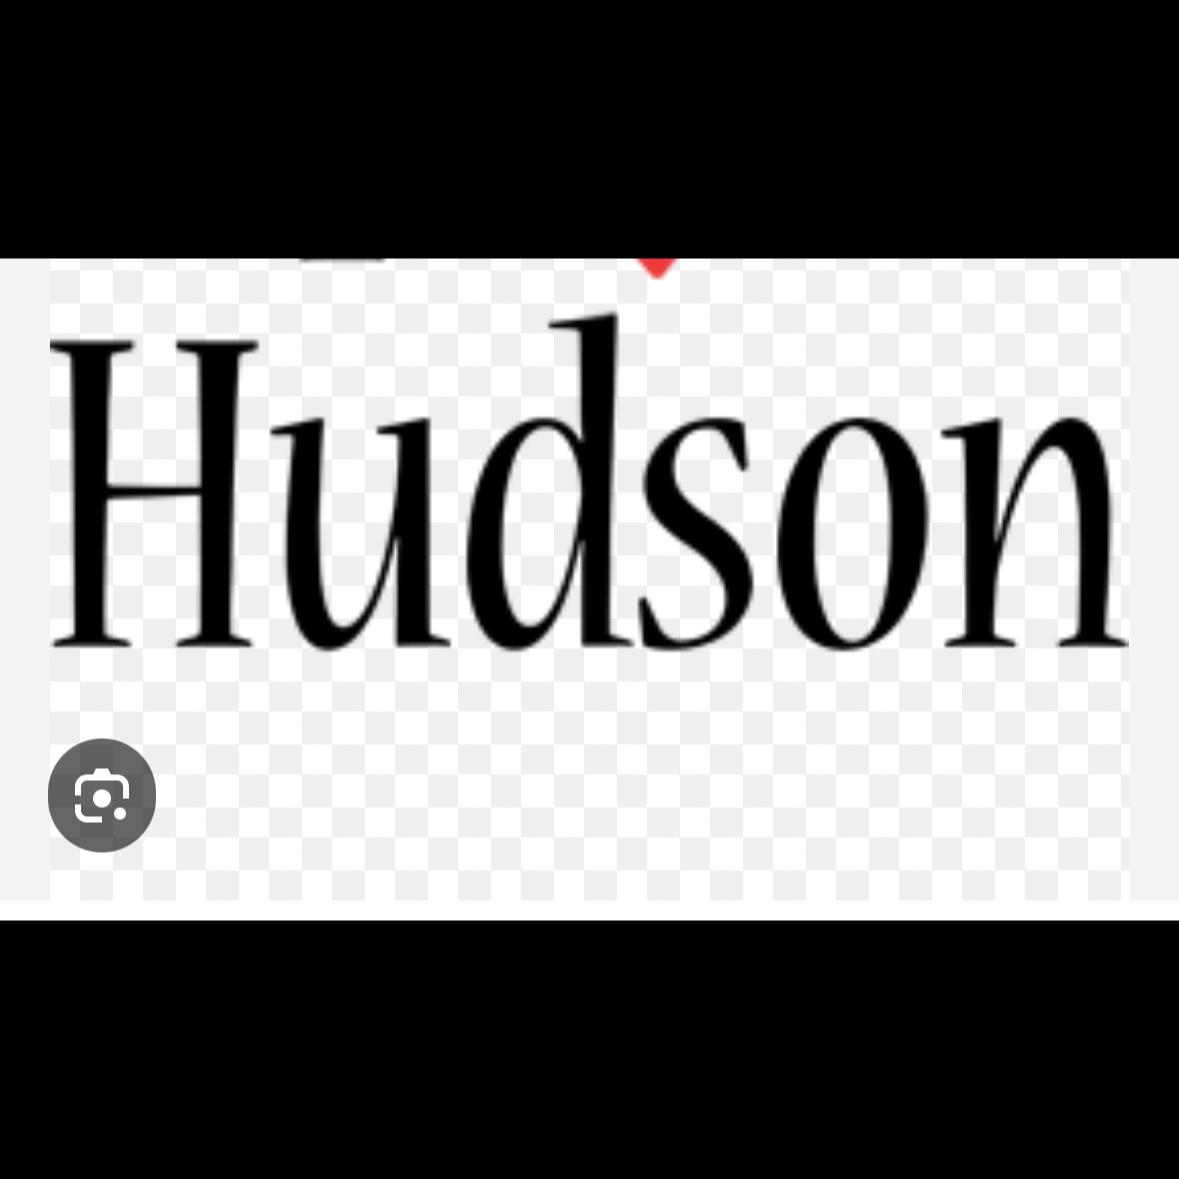 Hudson's images